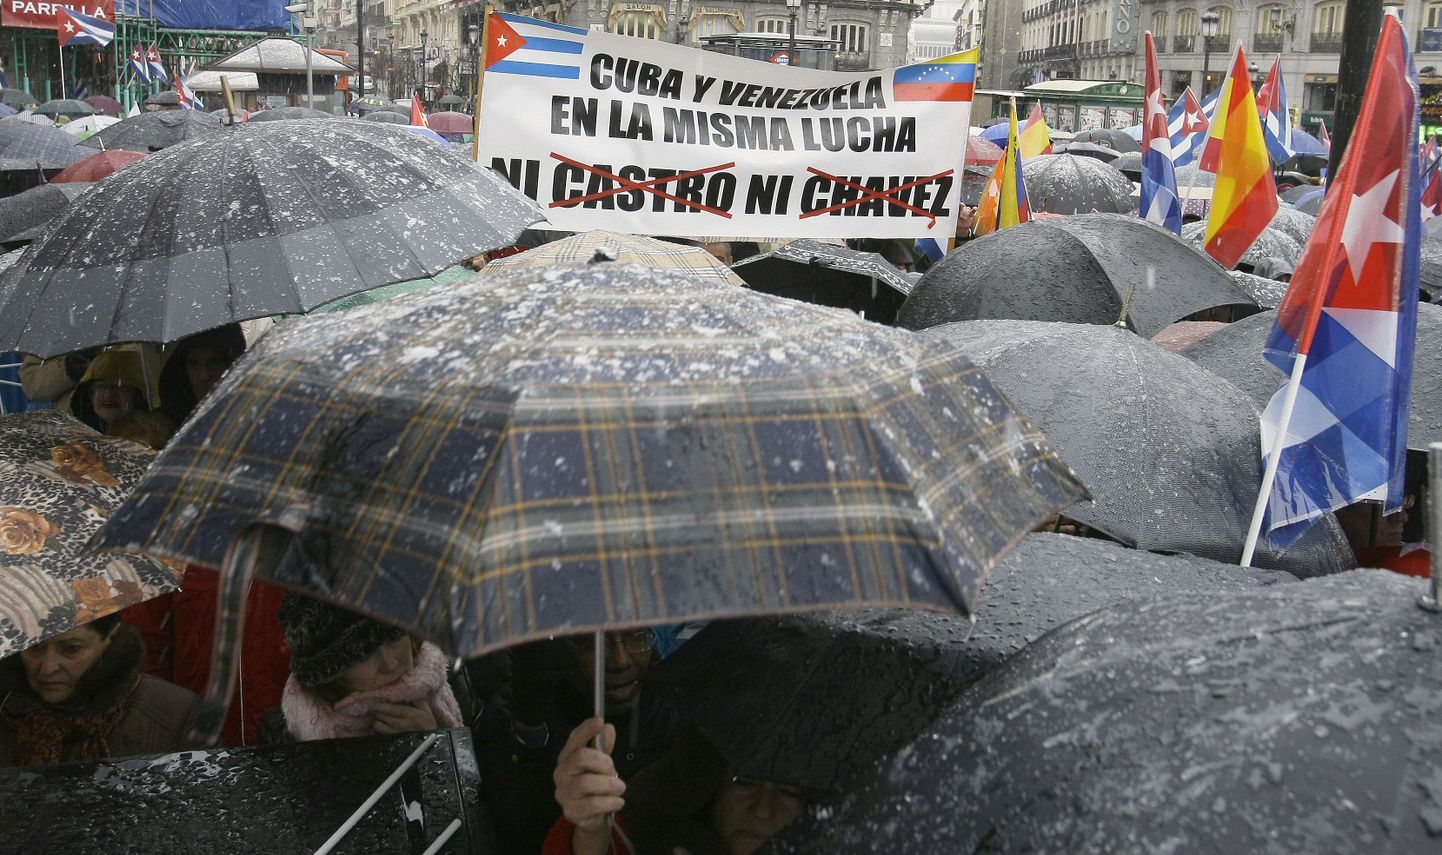 Castro režiimi vastane meeleavaldus Madridis.